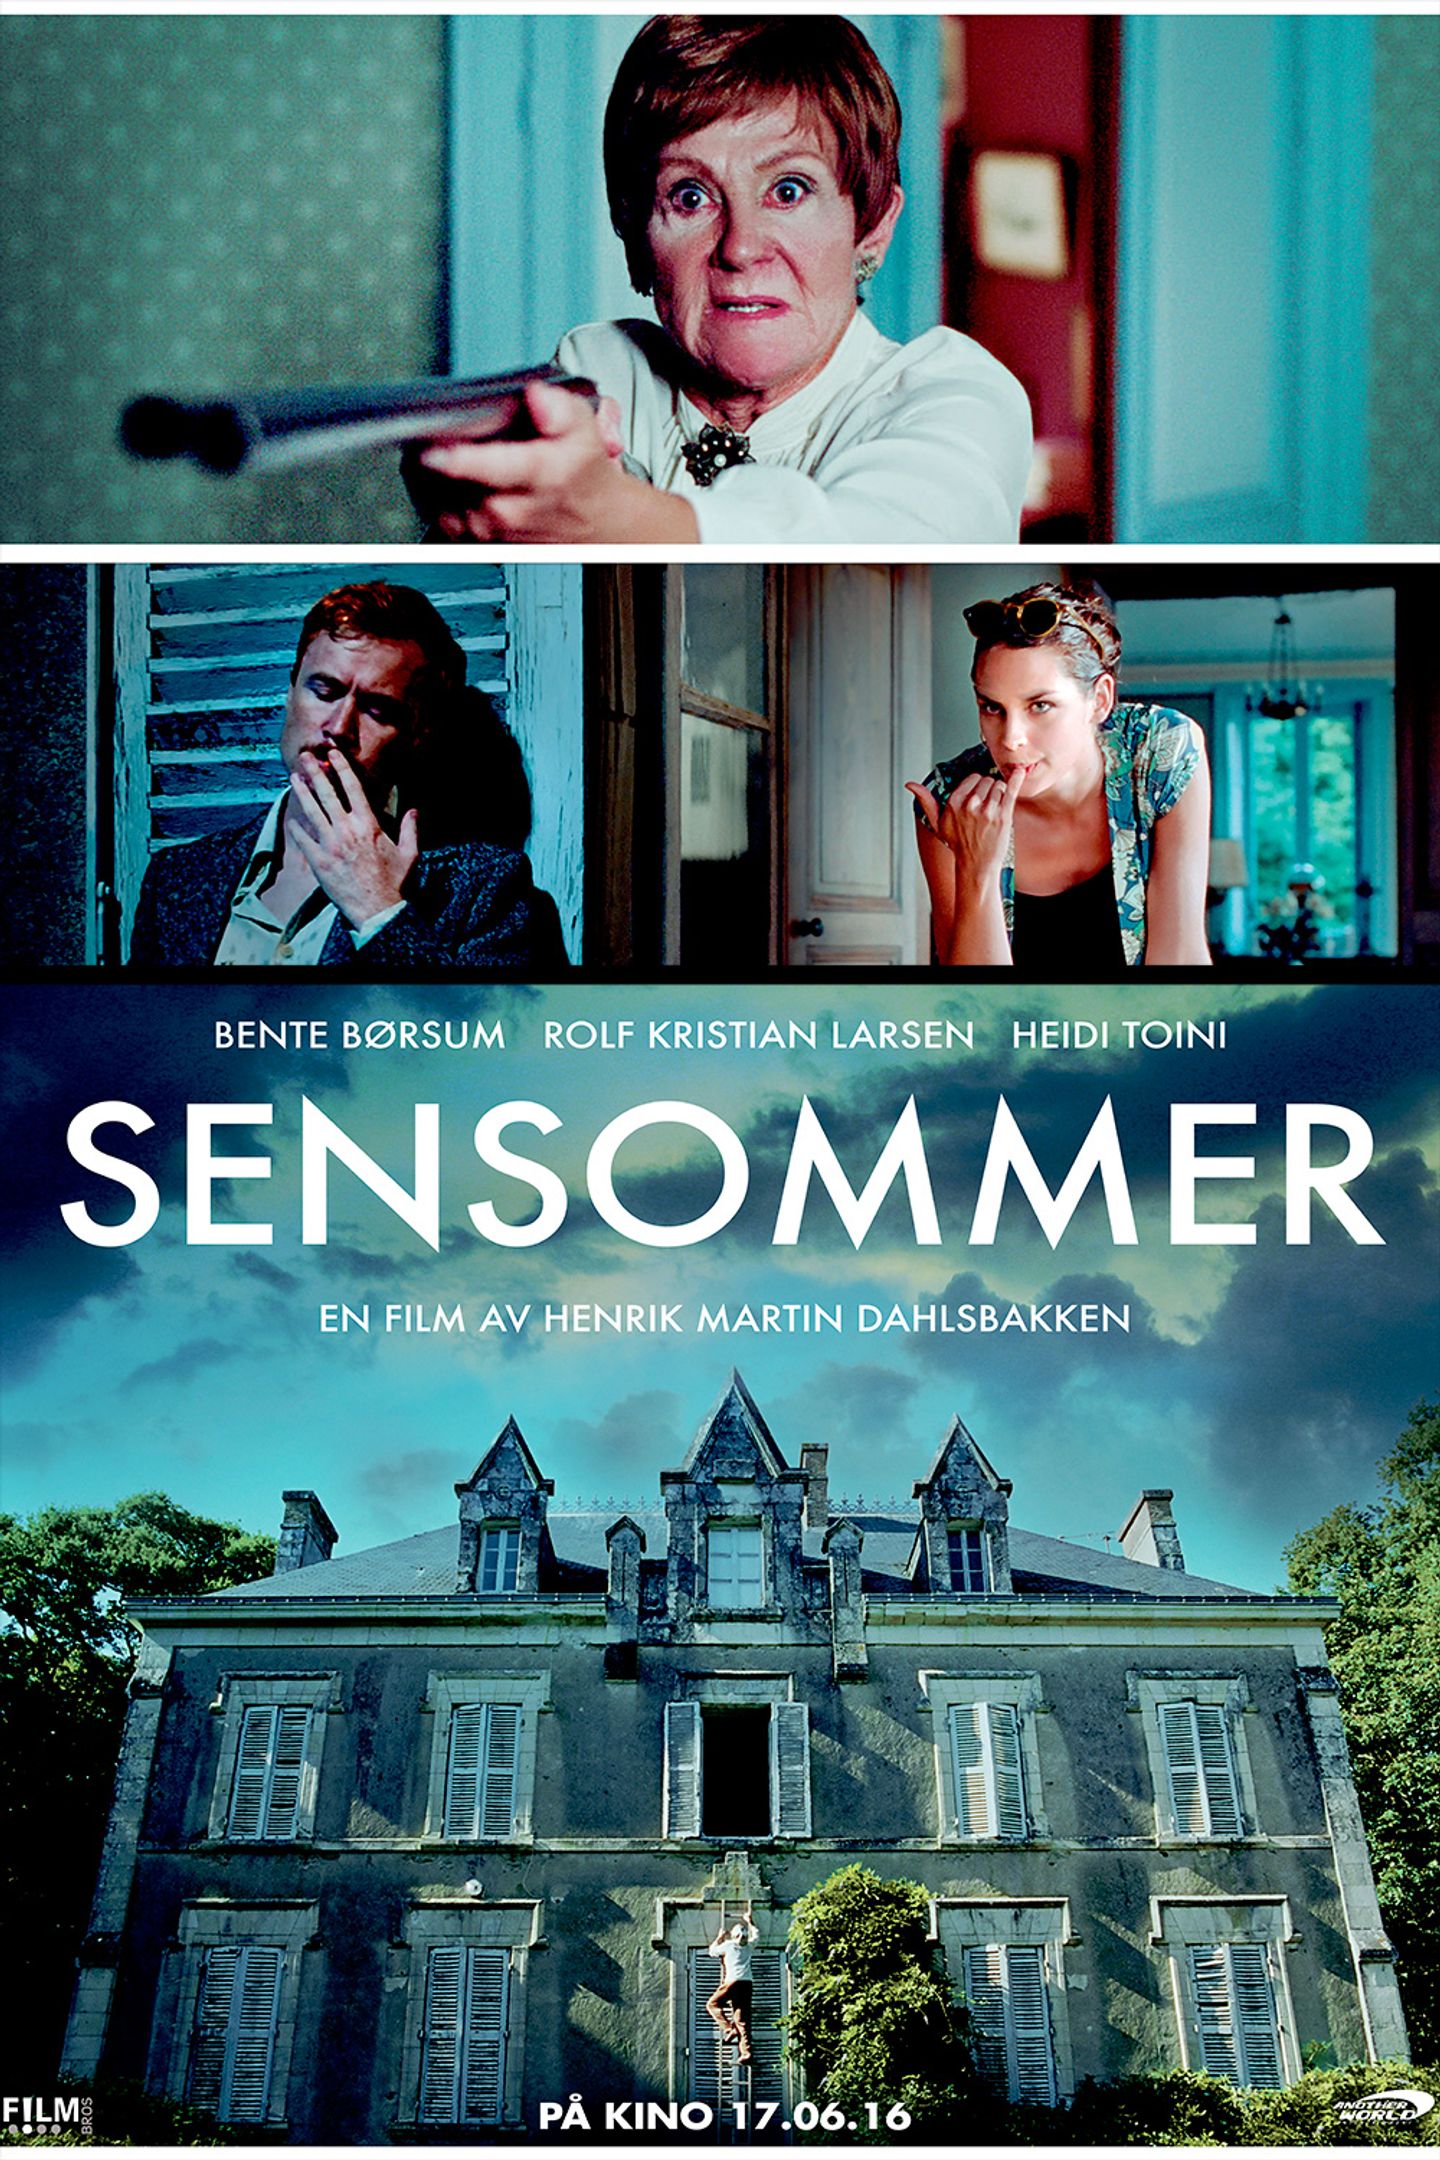 Plakat for 'Sensommer'